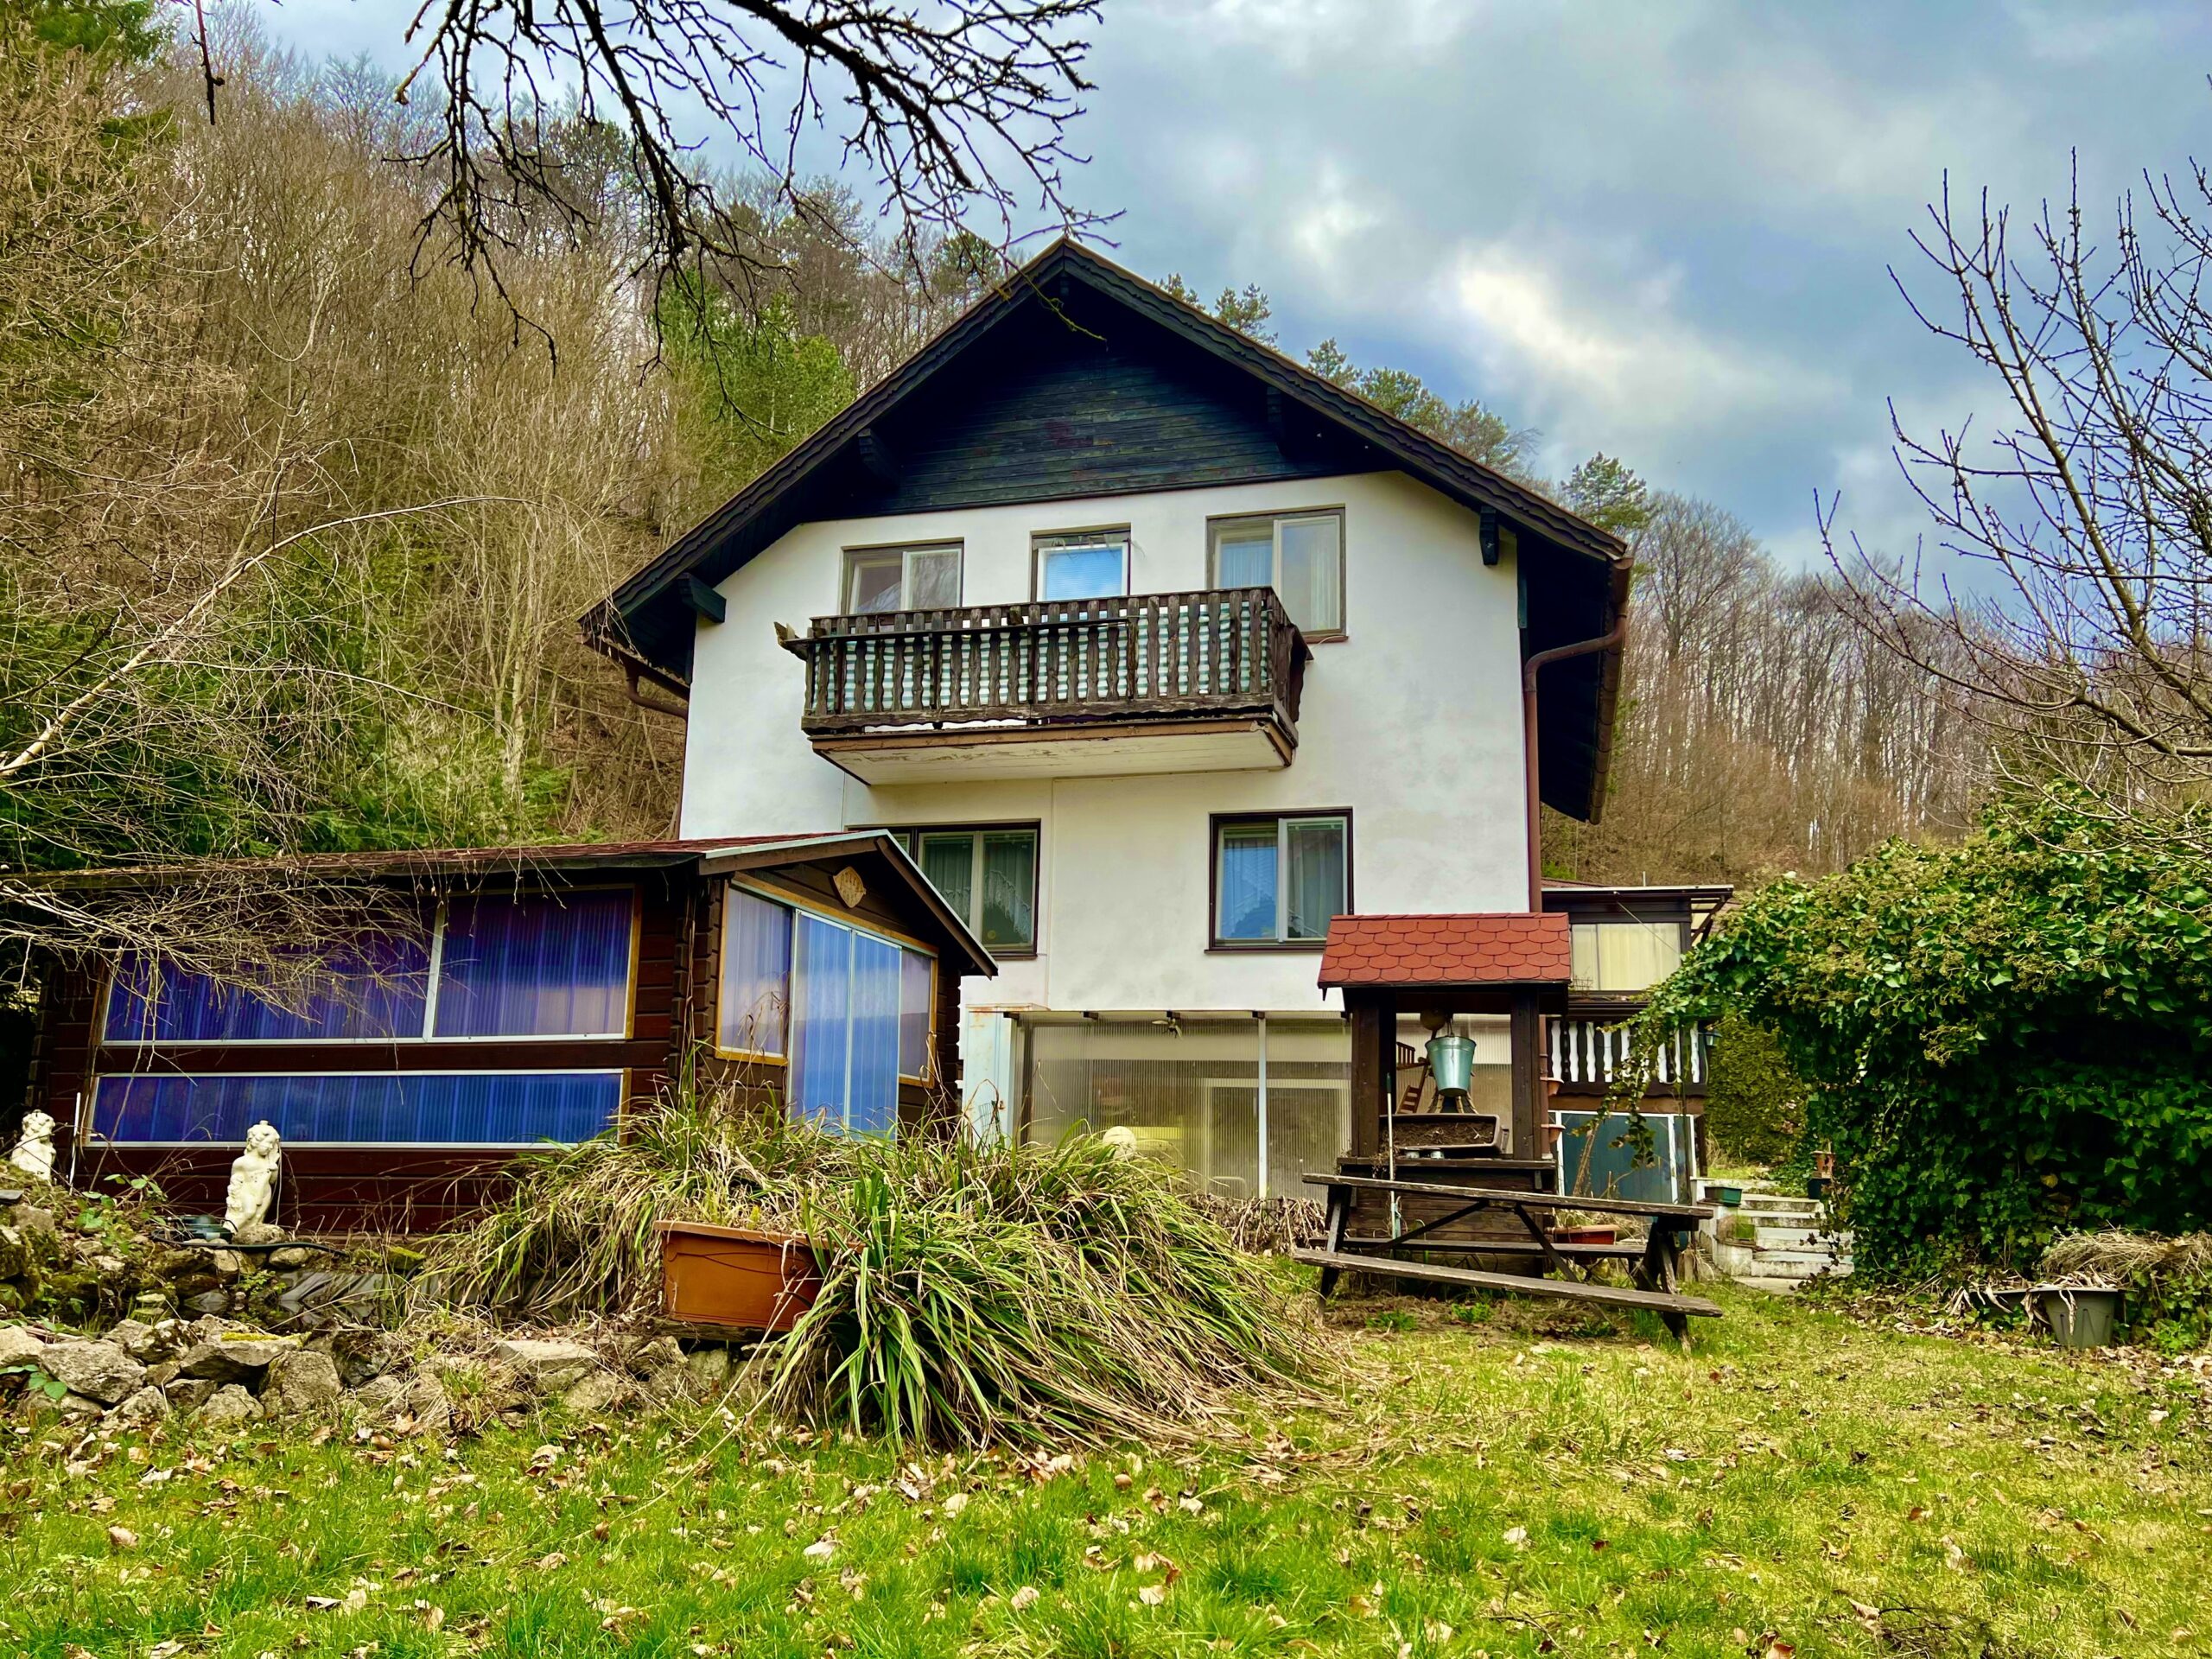 Zuhause in Pottenstein - Titelbild